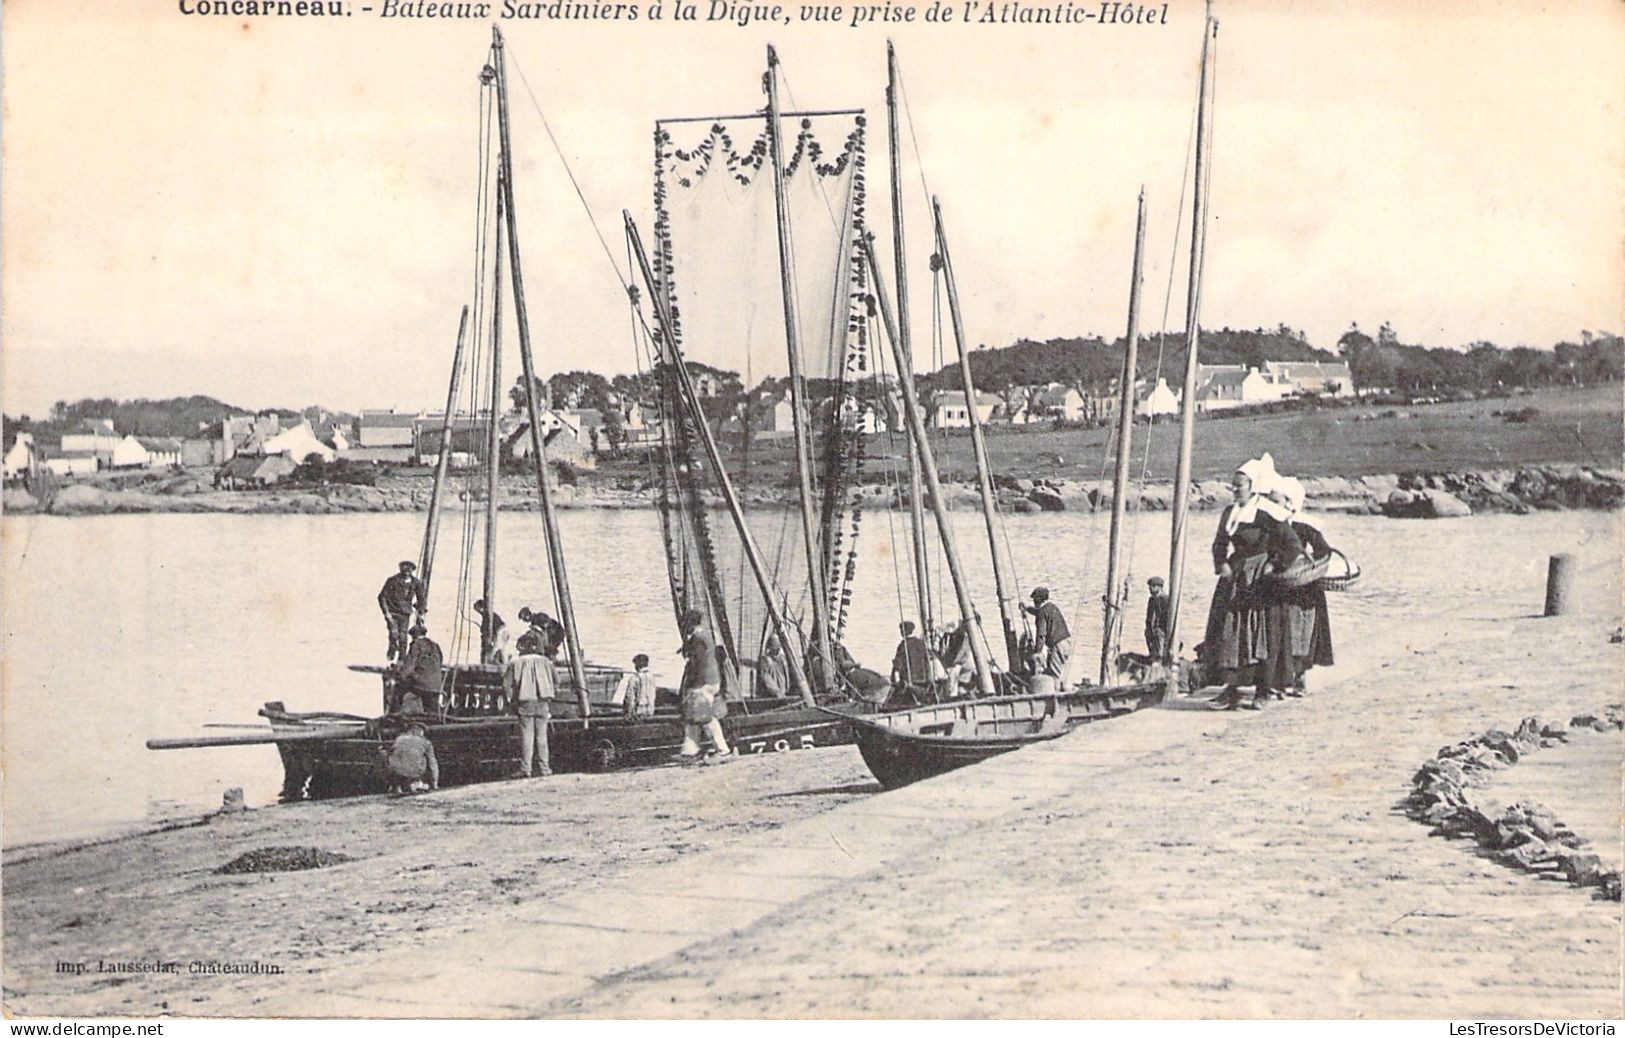 FRANCE - CONCARNEAU - Bateaux Sardiniers à La Digue Vue Prise De L'Atlantic Hôtel - Carte Postale Ancienne - Concarneau